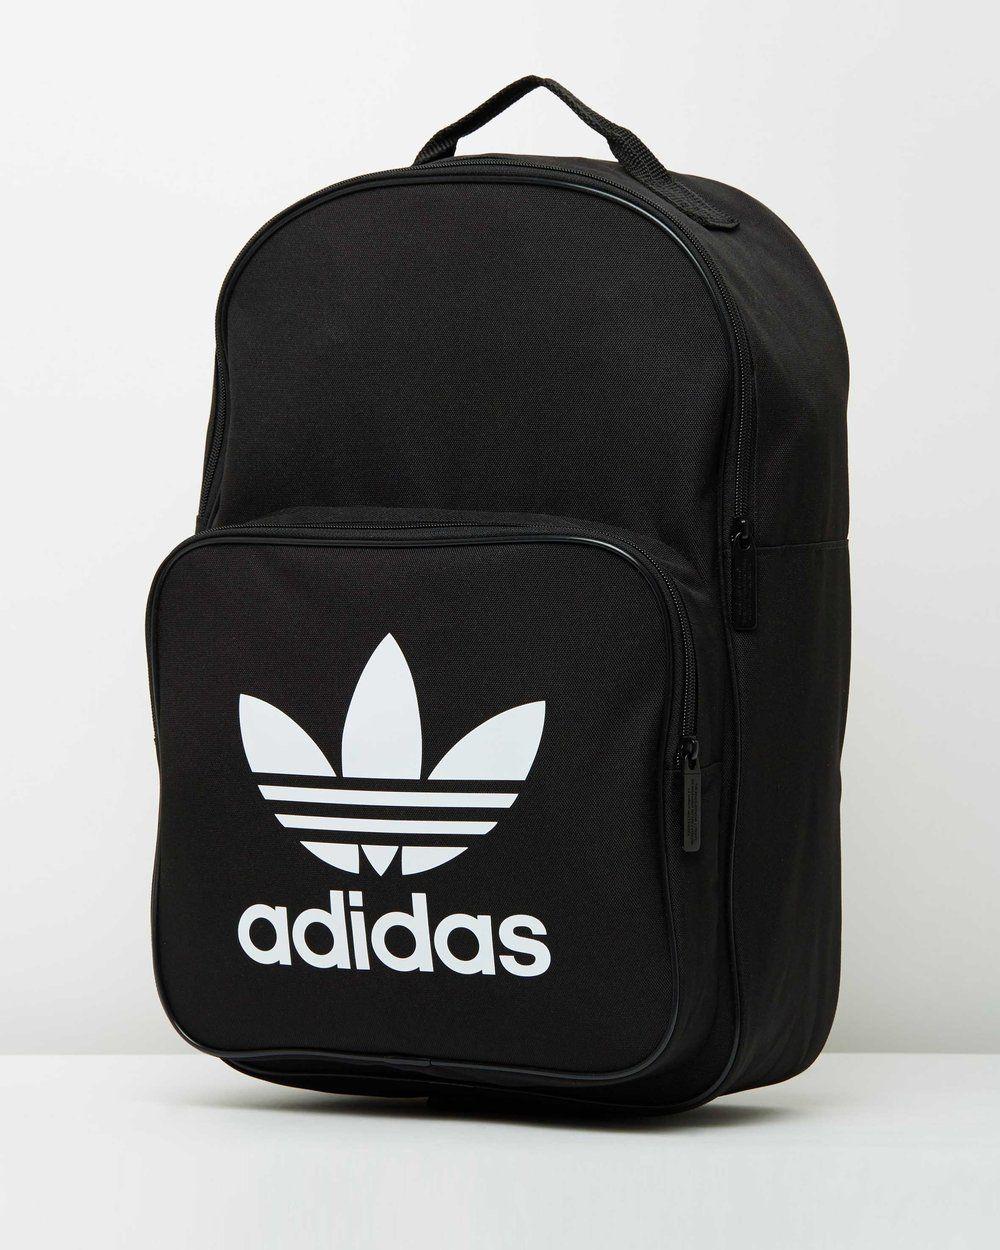 Australian Backpack Logo - ADIDAS TREFOIL BACKPACK CLASSIC BAG BLACK AUSTRALIAN SELLER ...